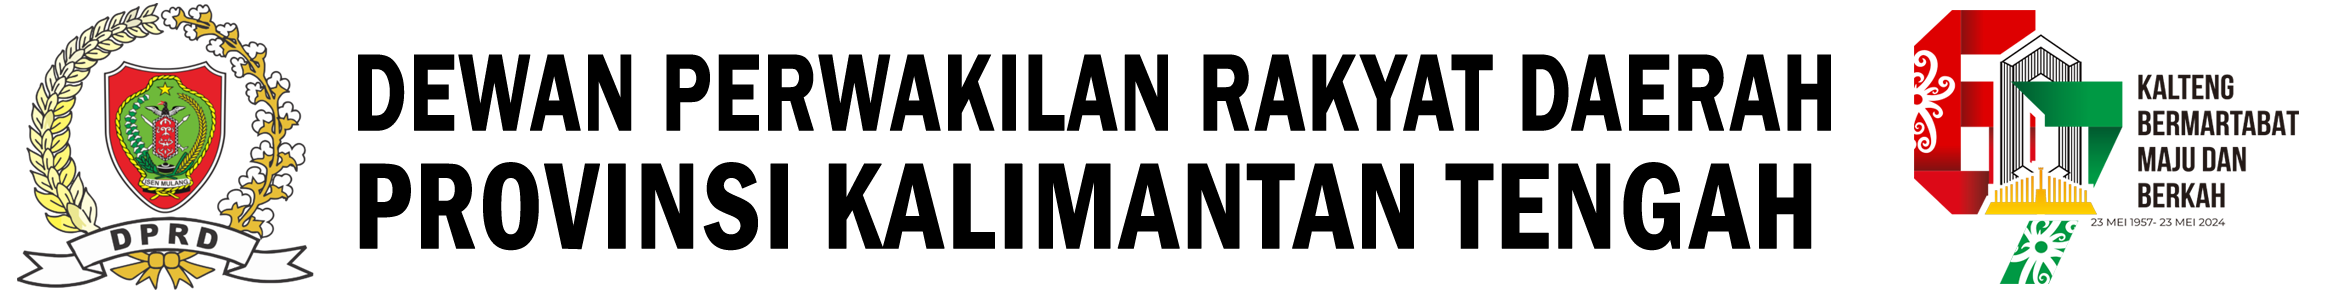 logo dprd kalteng edisi hut 67